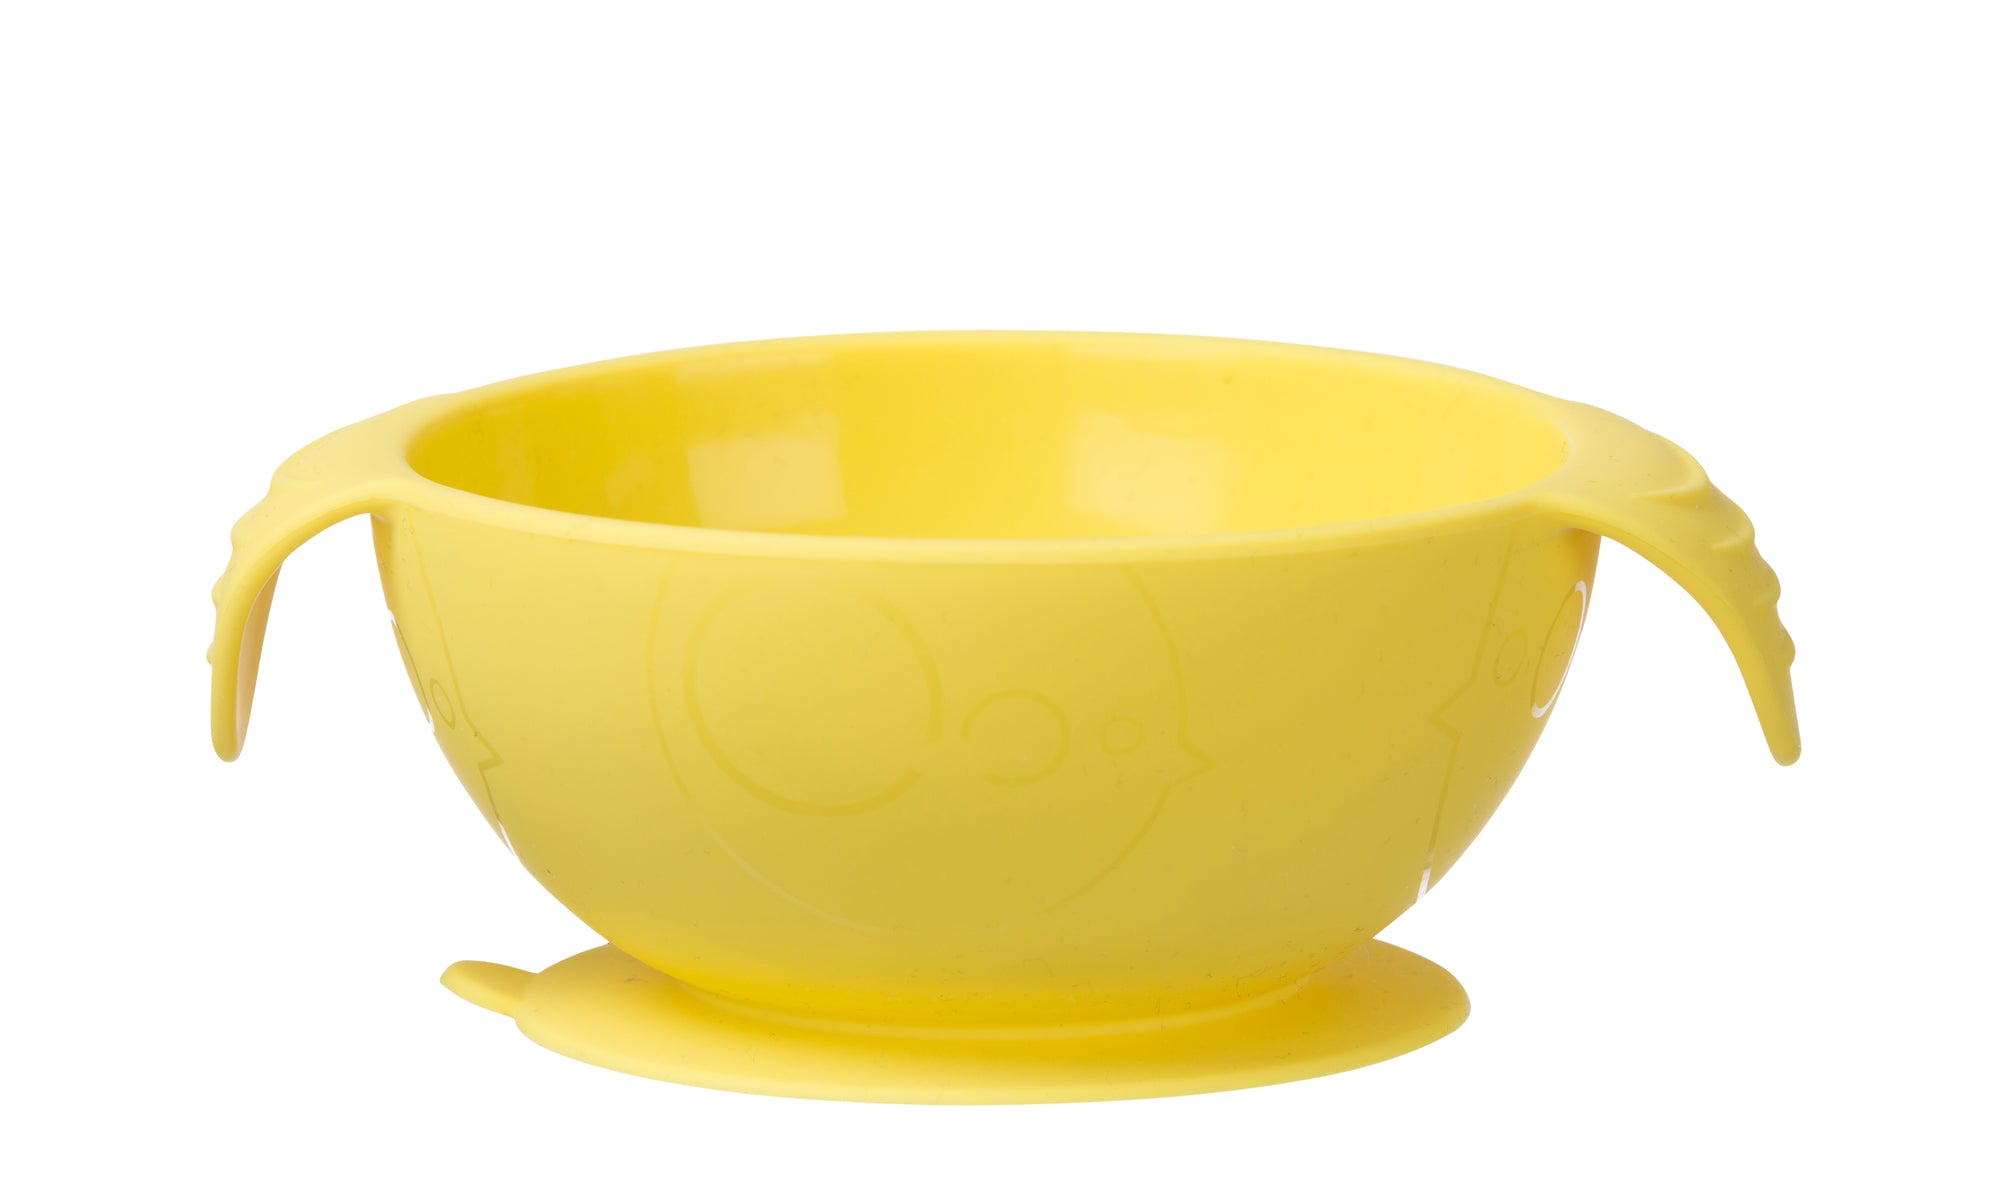 B Box - Silicone Bowl and Spoon - Lemon